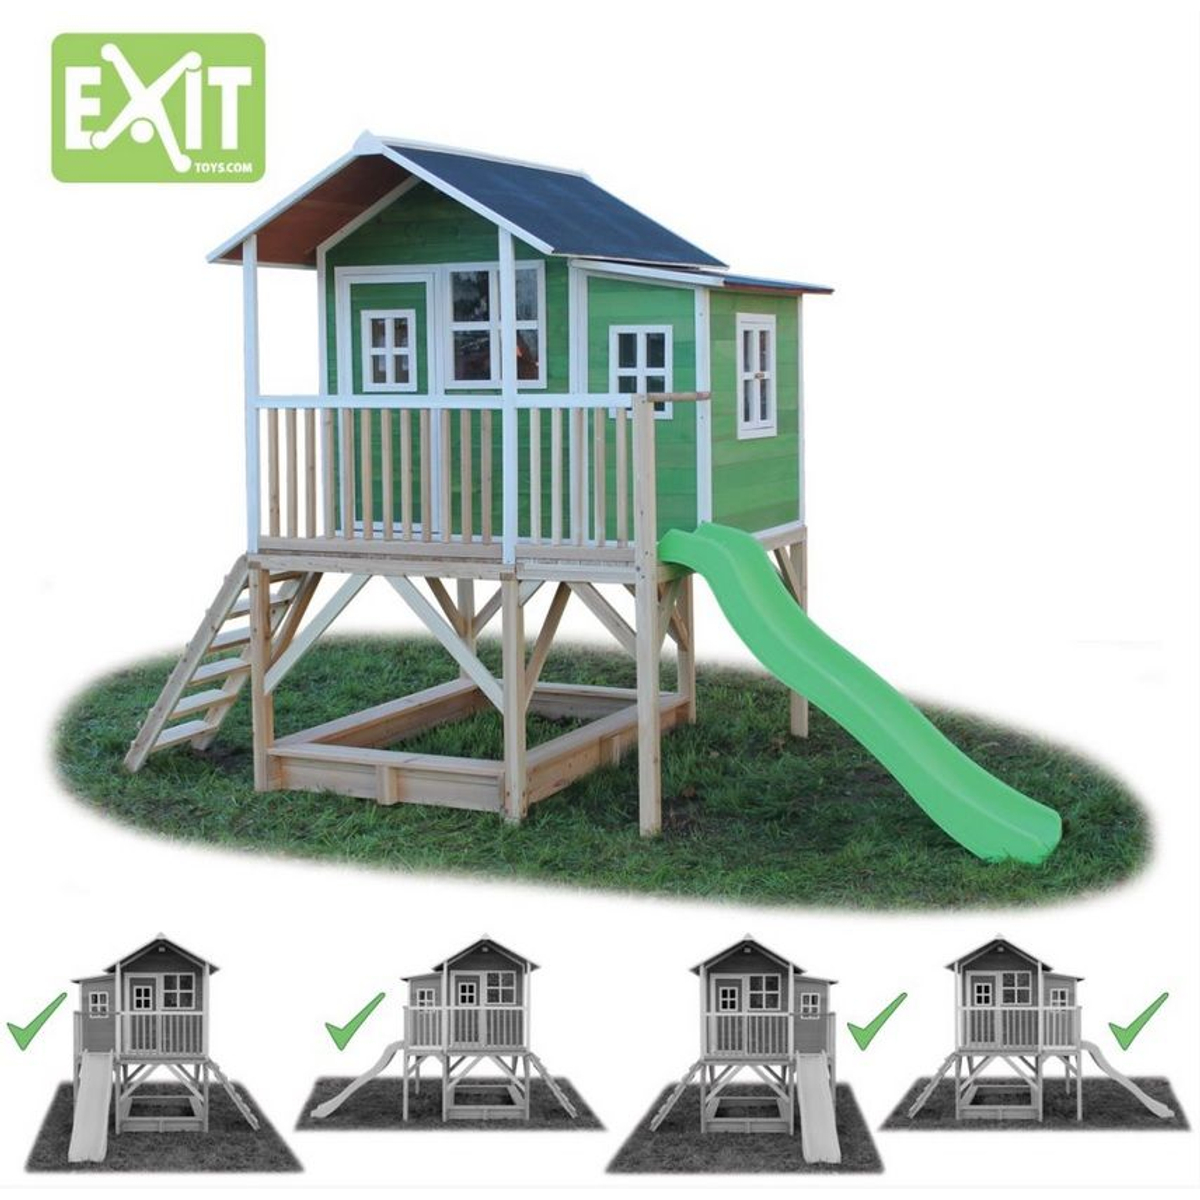 Exit Loft 550 Speelhuisje - Groen